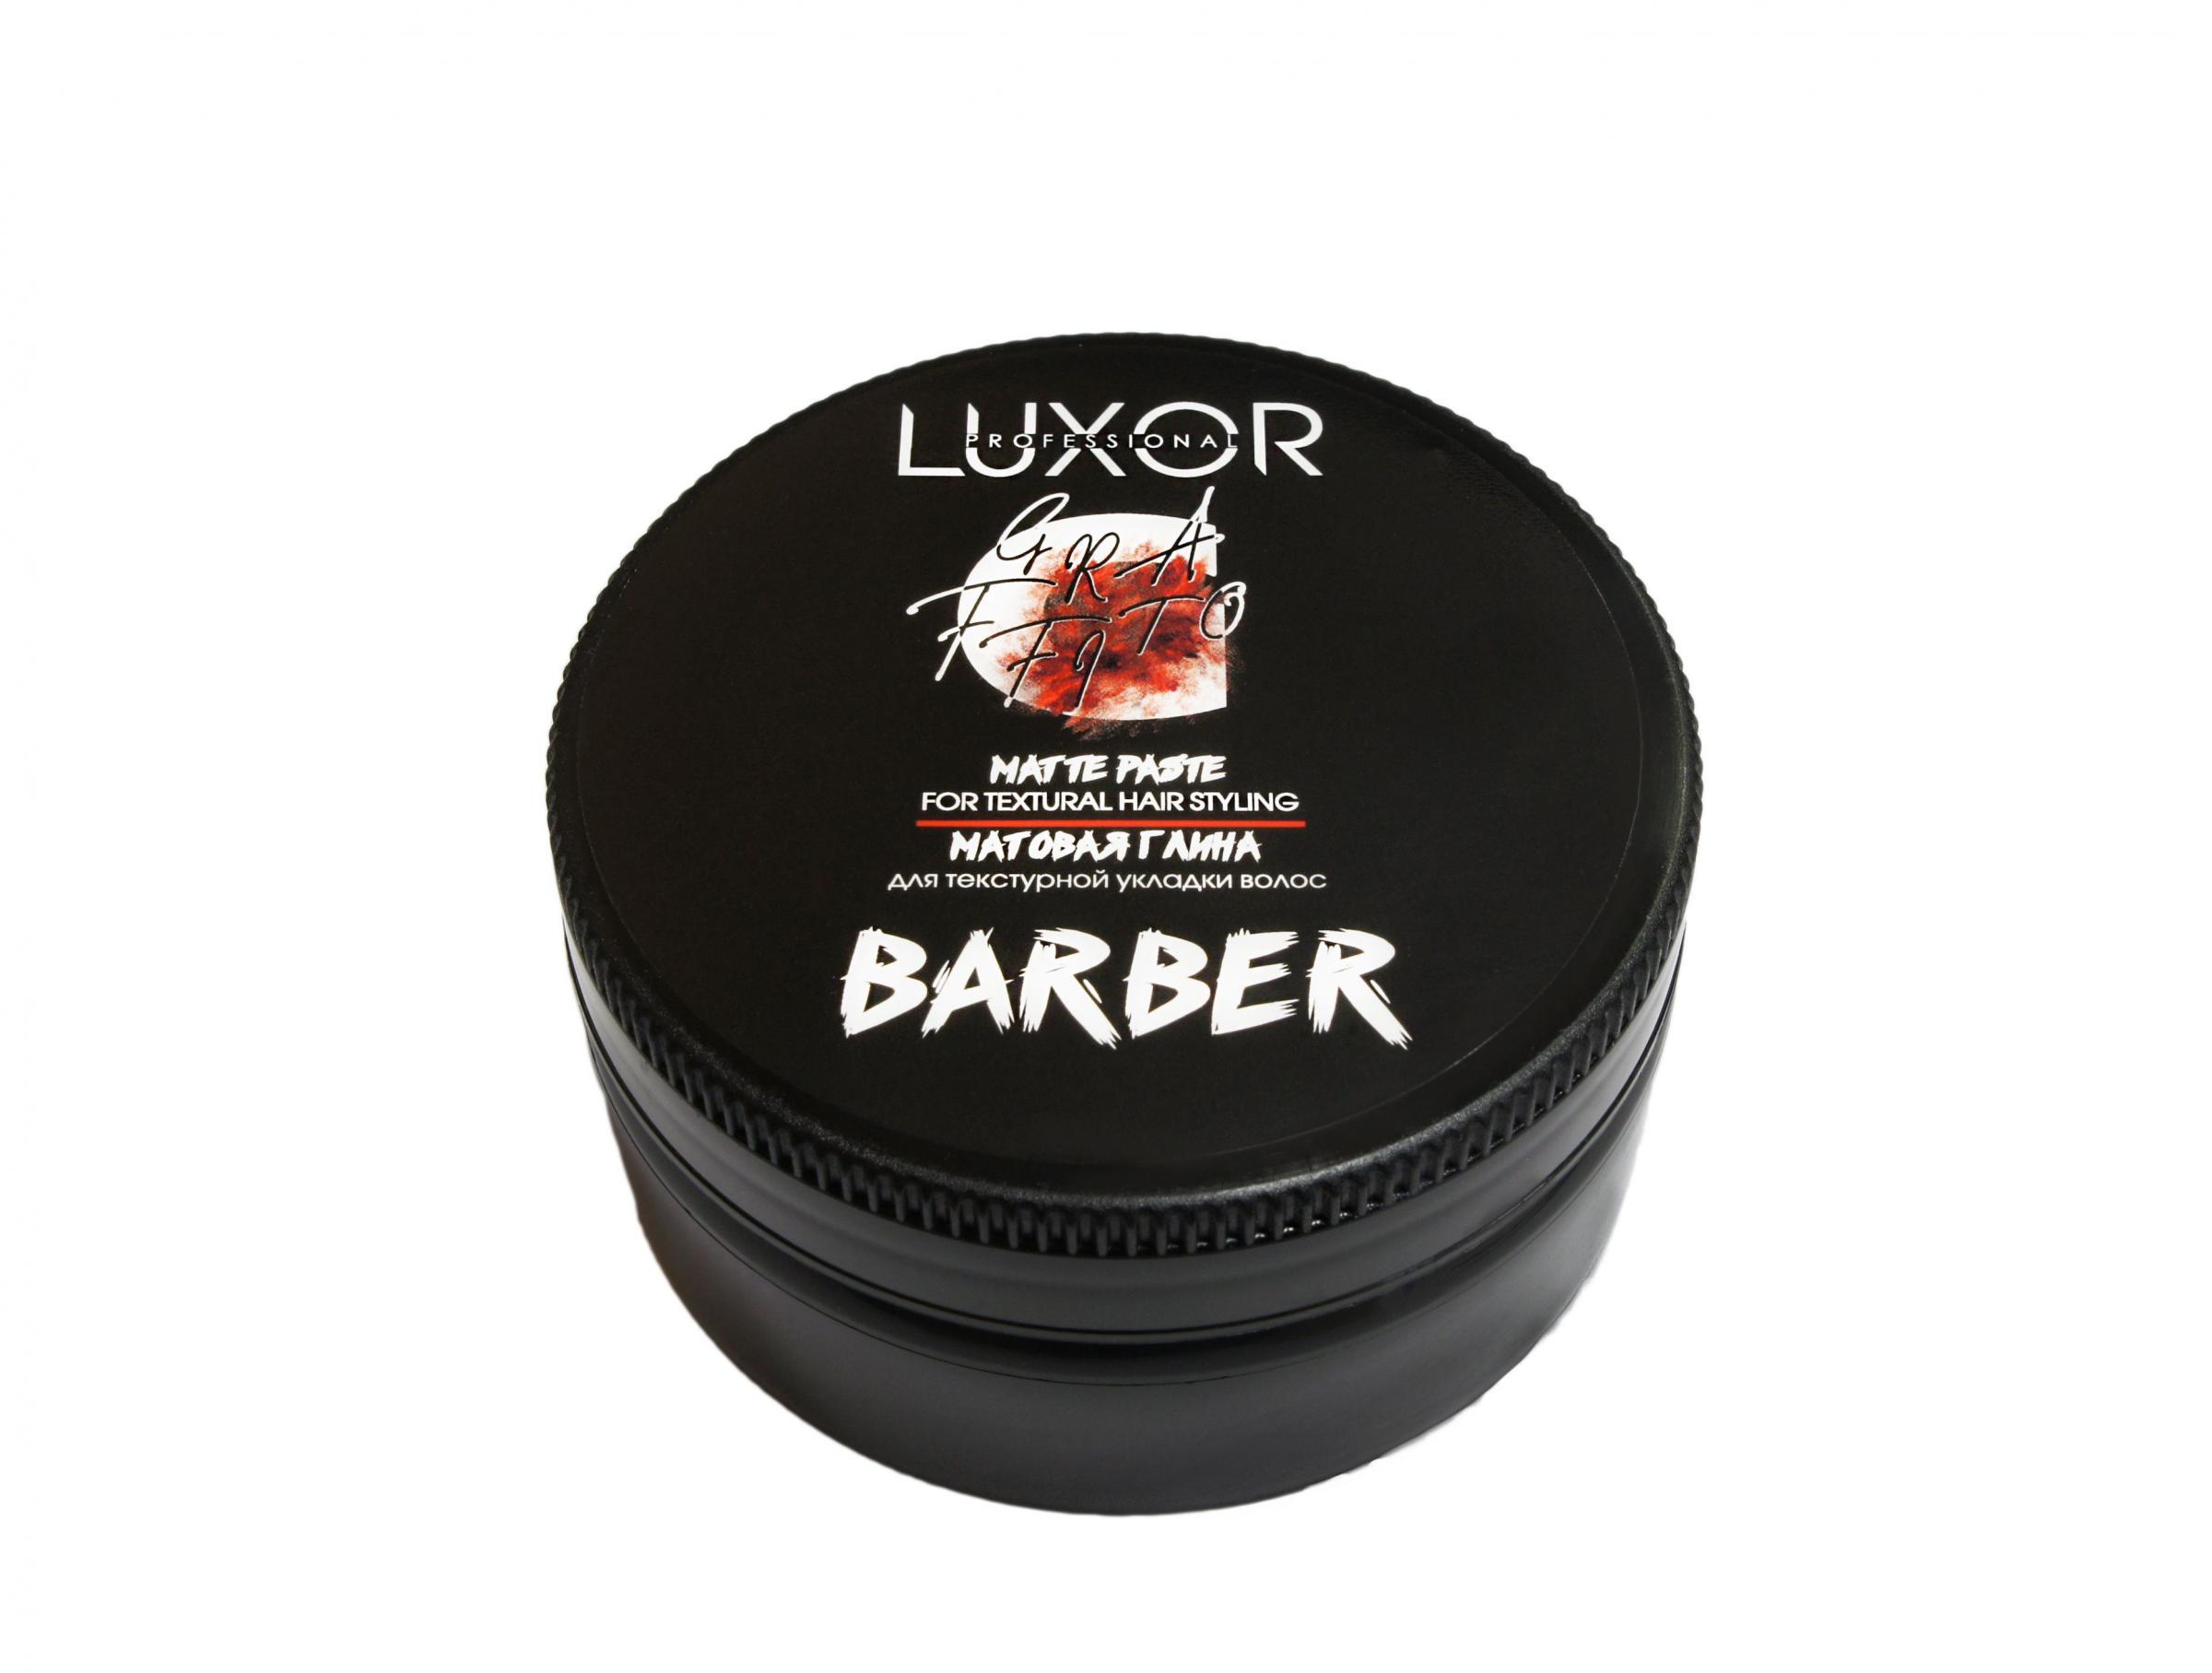 Матовая глина для текстурной укладки волос Luxor Professional 75 мл